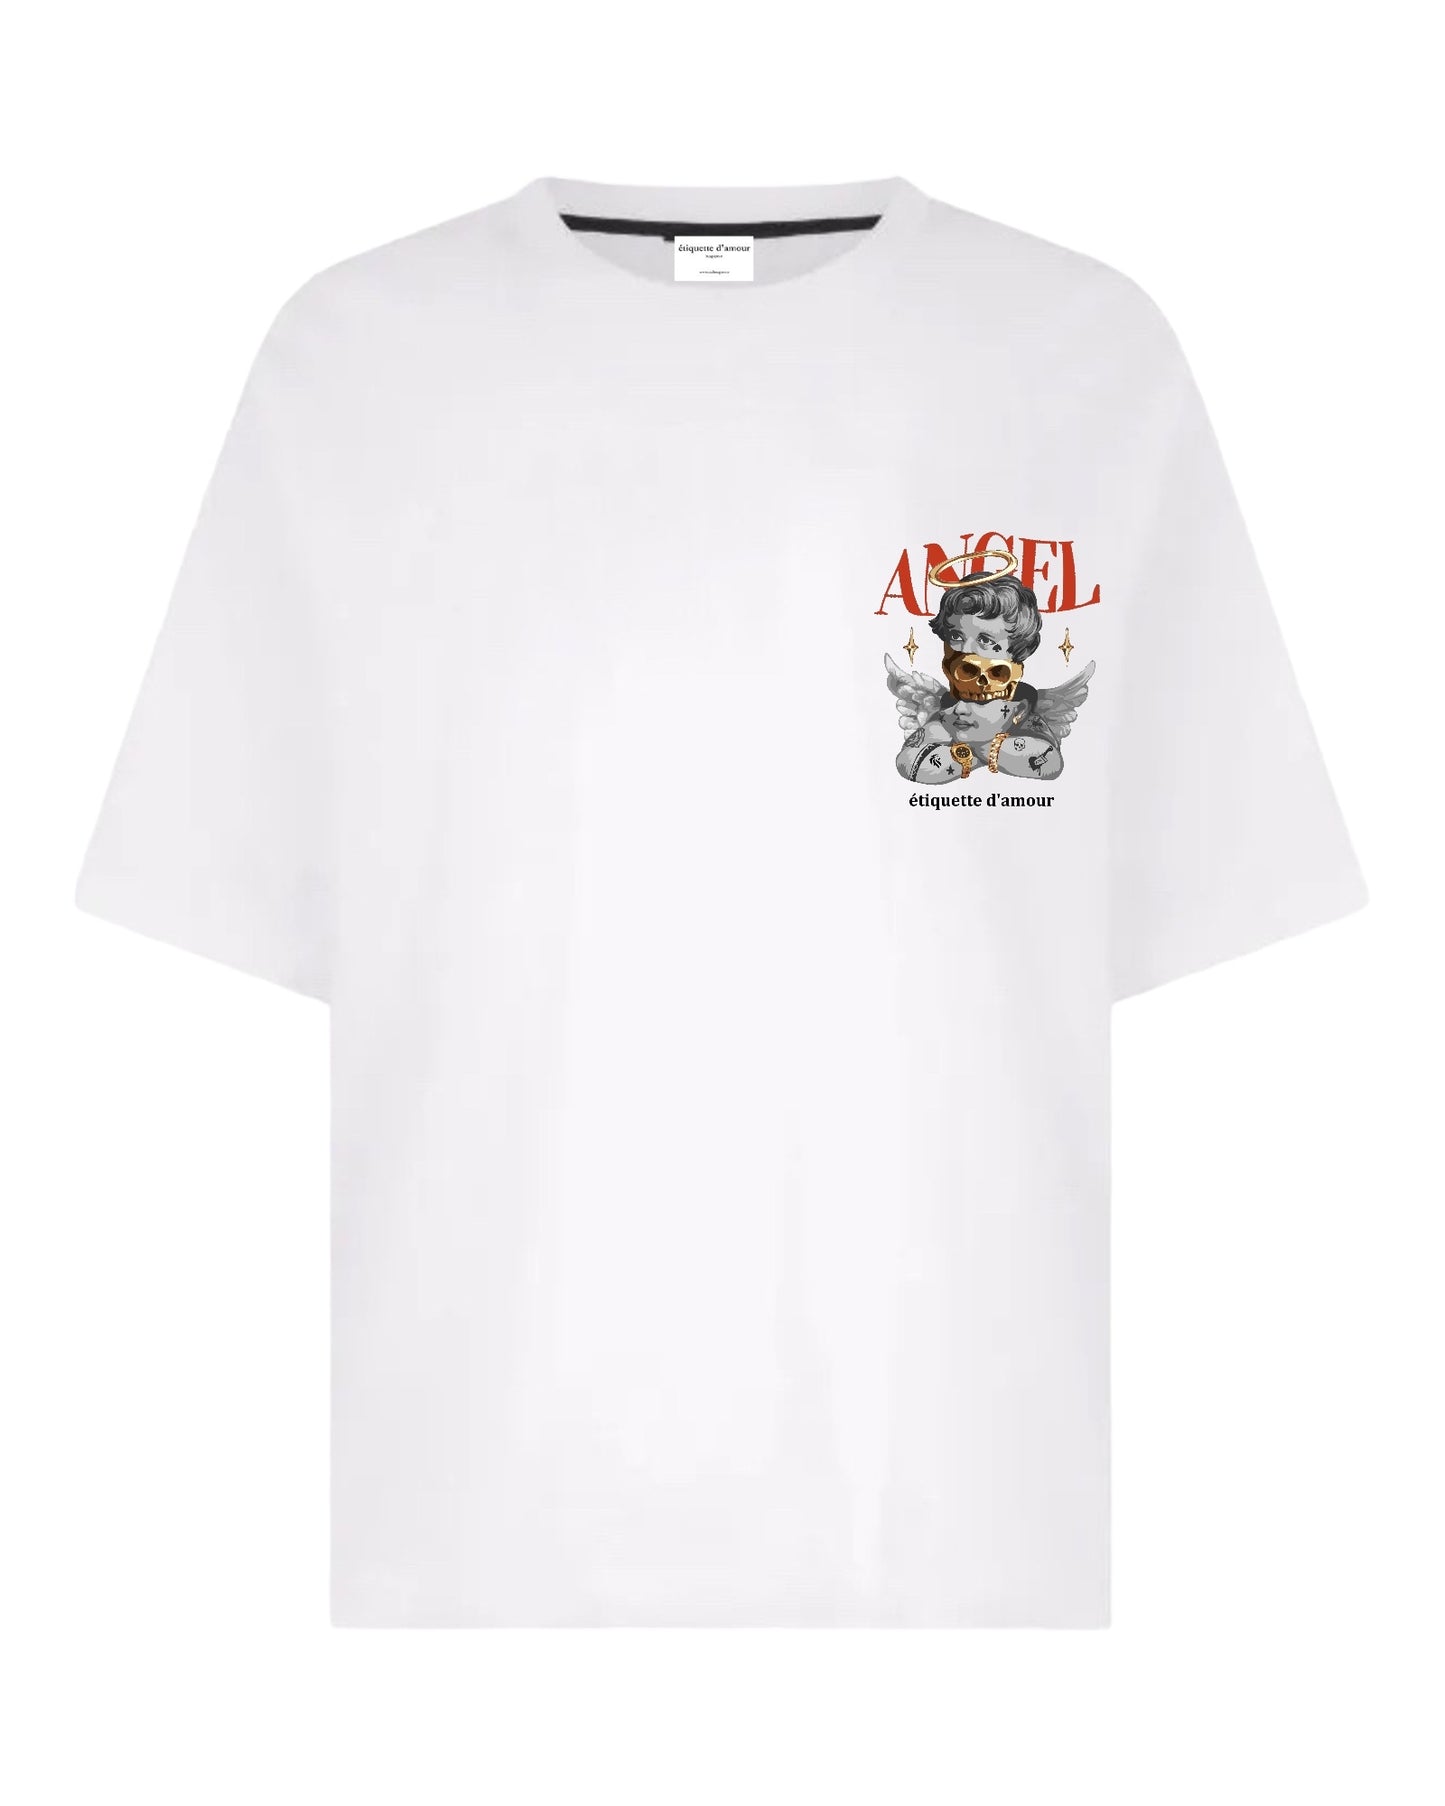 XLuxe T-Shirt #0002